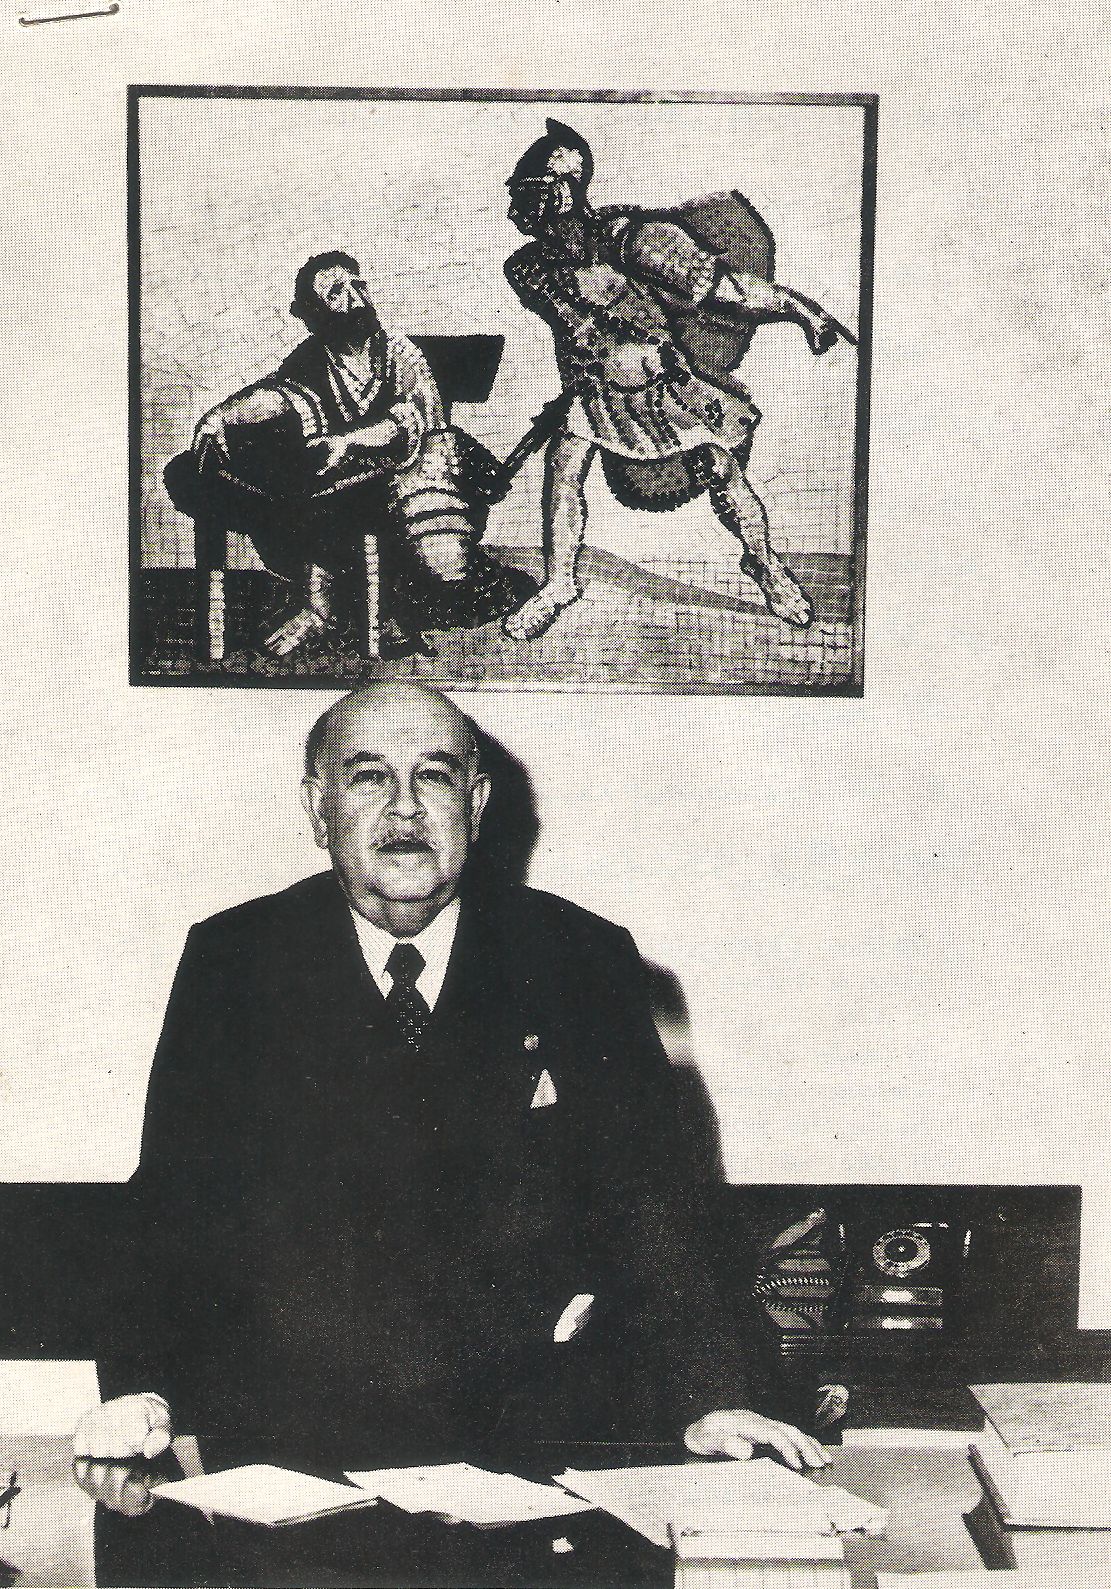 El regiomontano fue nominado al Premio Nobel de Literatura y "el mejor prosista de en castellano de cualquier época" según Jorge Luis Borges